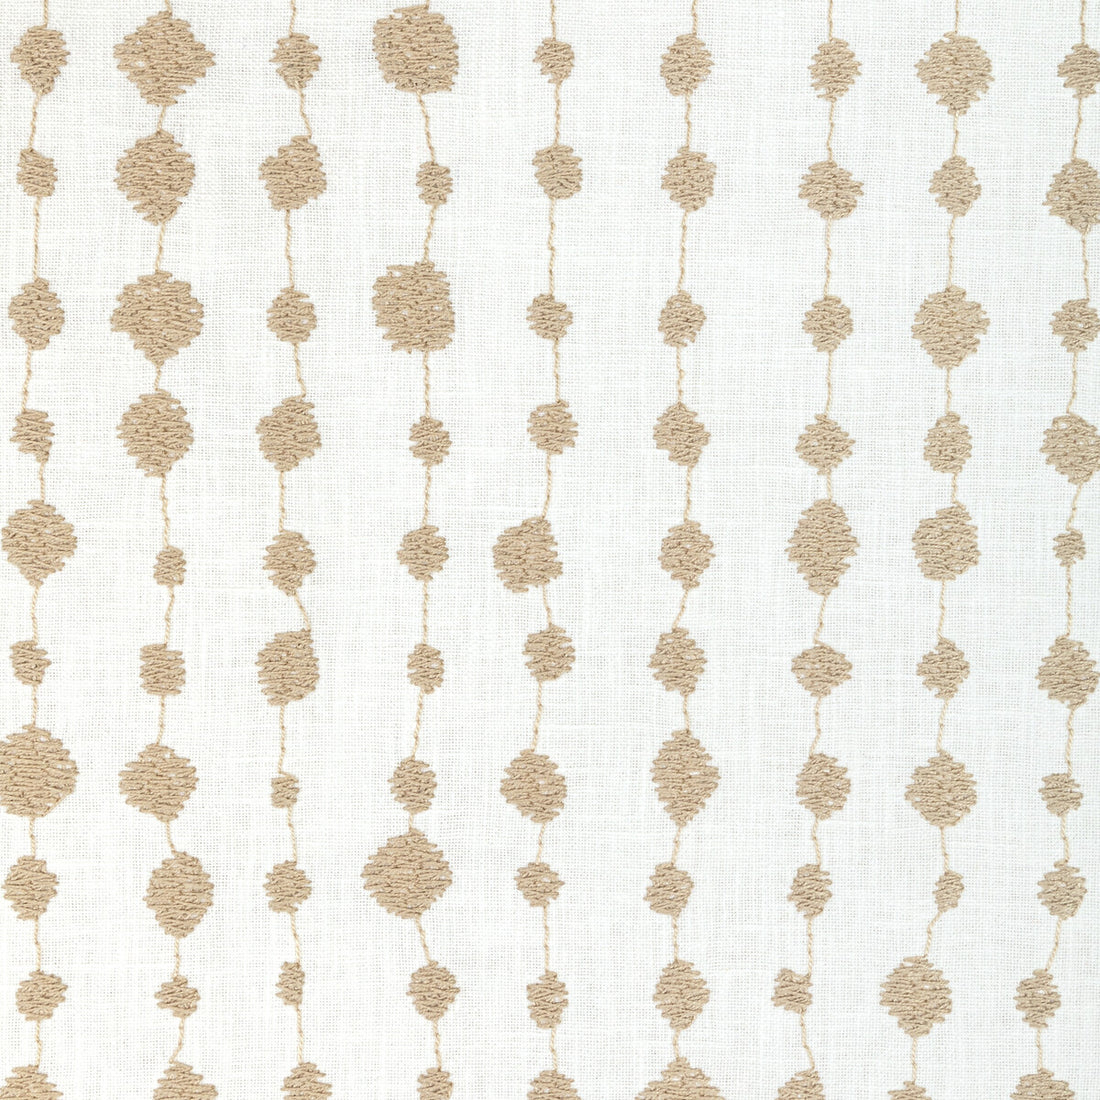 Kravet Basics fabric in 36025-106 color - pattern 36025.106.0 - by Kravet Basics